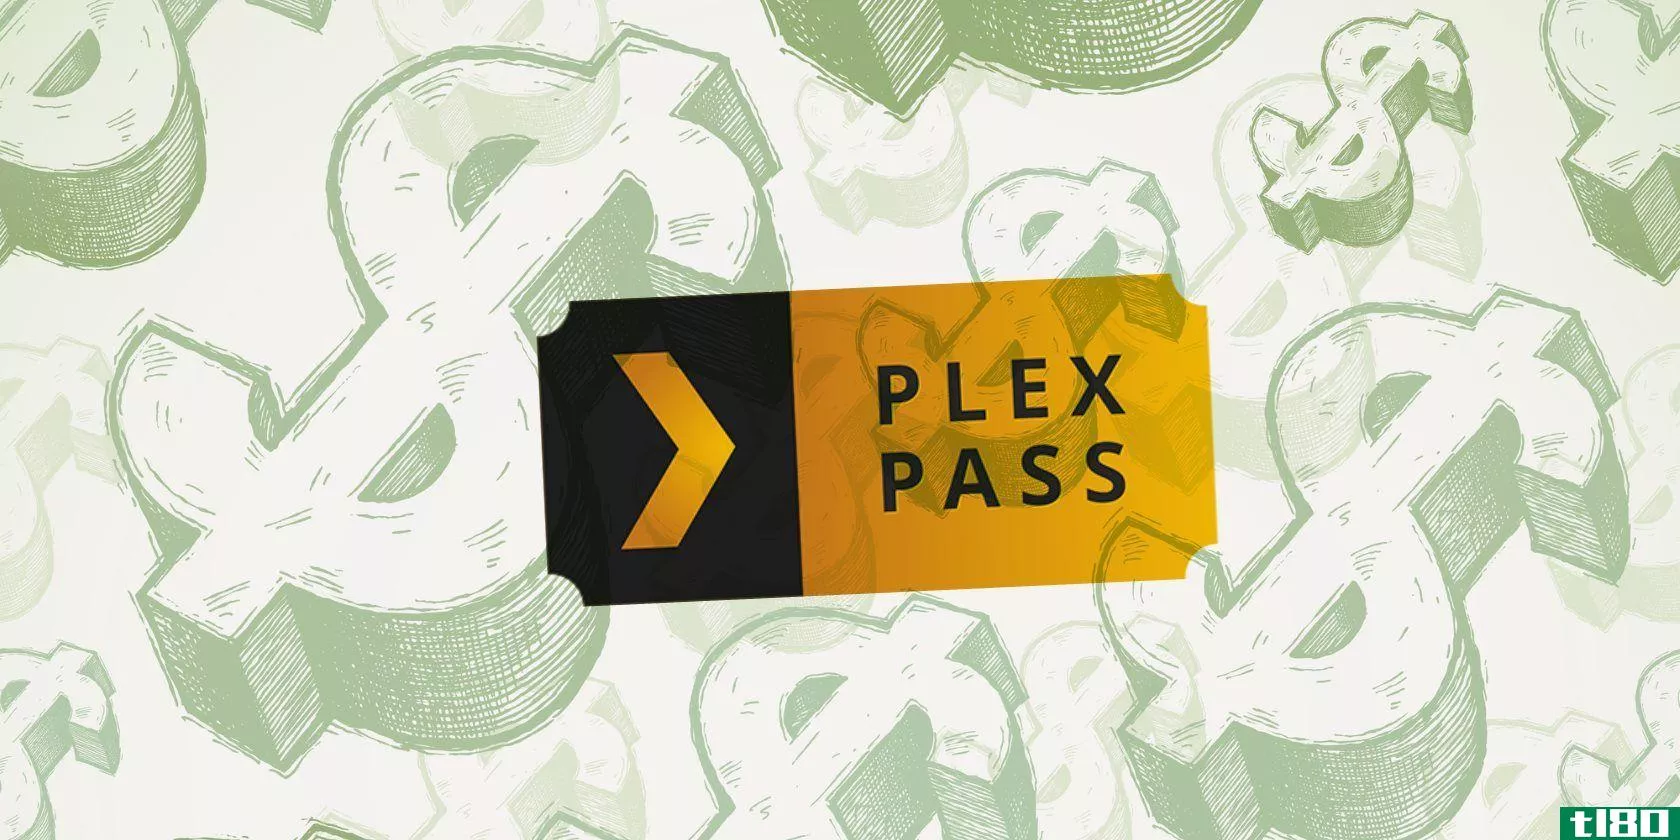 plex-pass-worth-money-featured